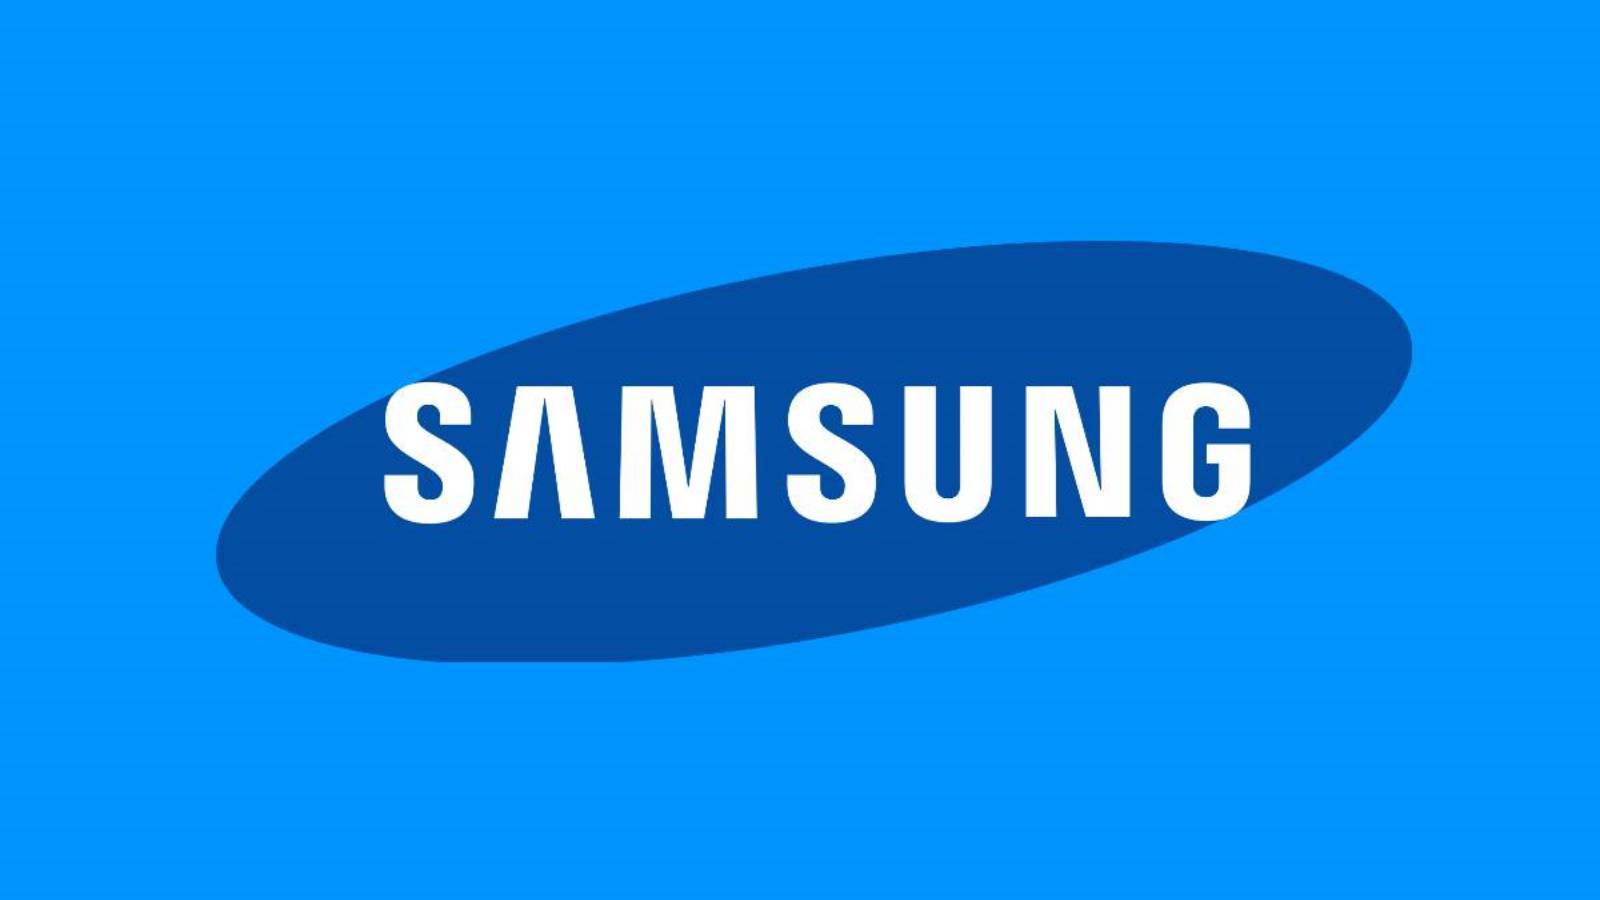 Samsung præsenterer de seneste innovationer inden for klimaanlæg